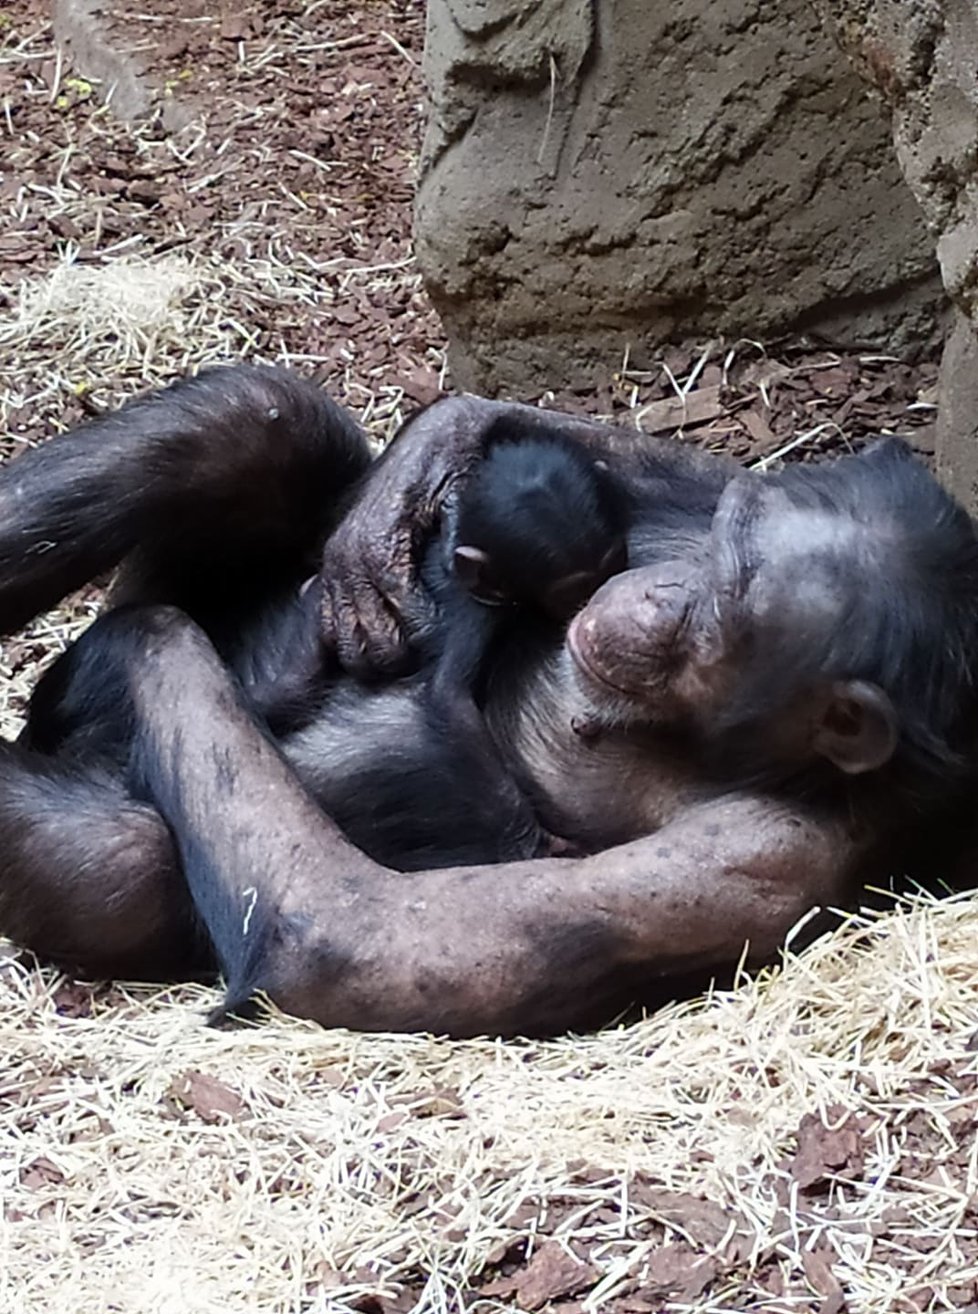 Samice šimpanze se stará o své mládě v ostravské zoo.